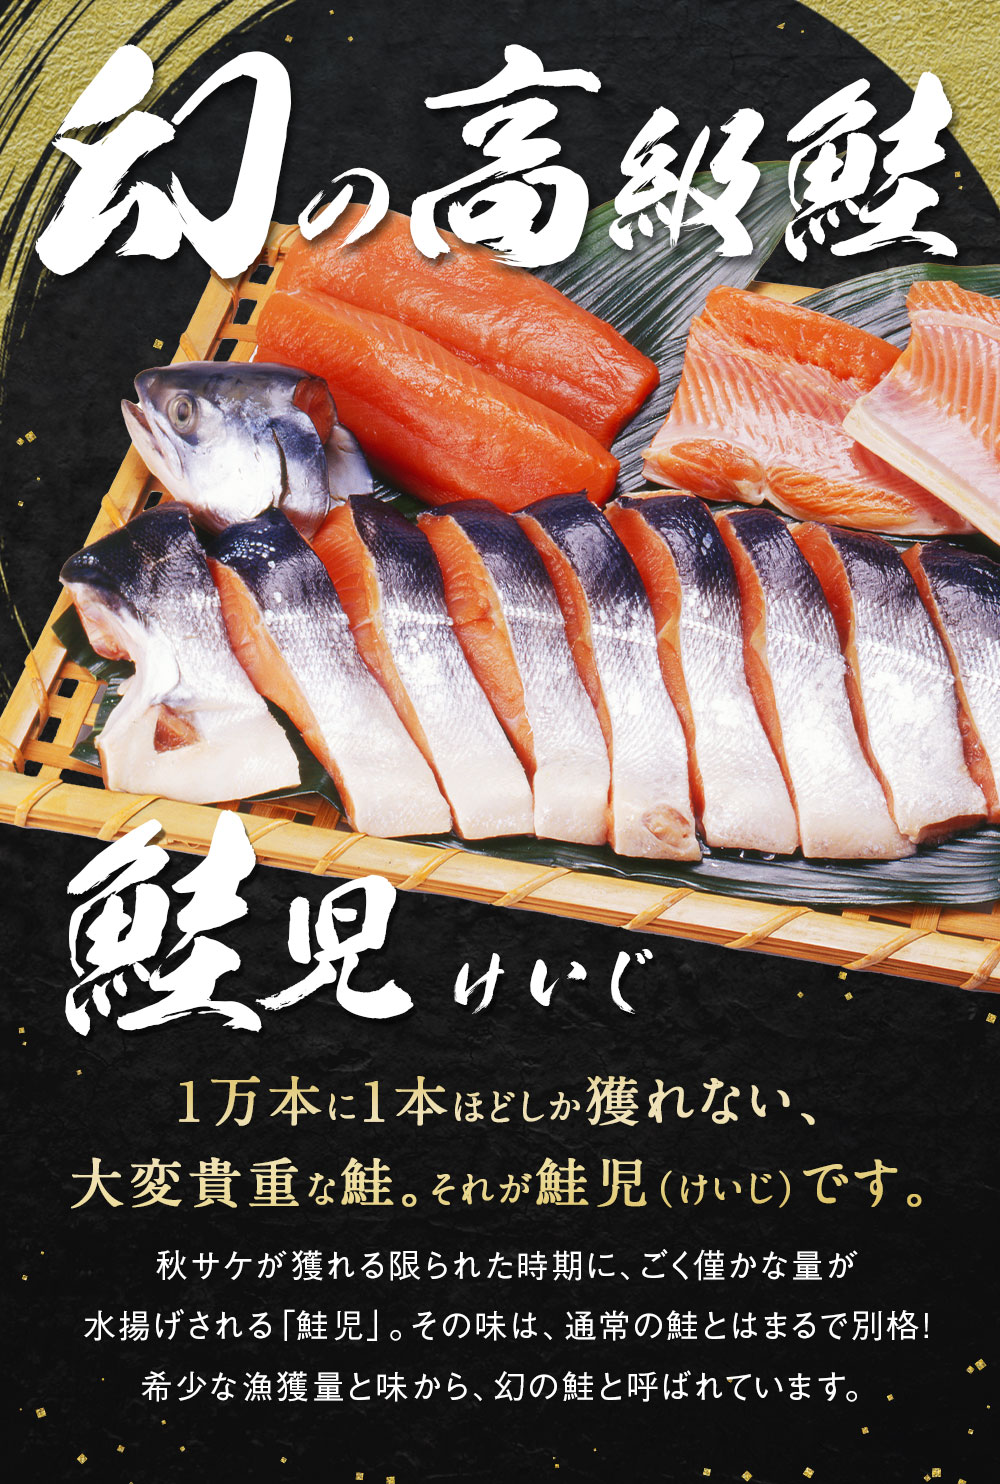 おすすめ特集 幻の鮭 鮭児 2 7kg 姿 北海道 知床ウトロ産 けいじ ケイジ 高級魚 Fucoa Cl